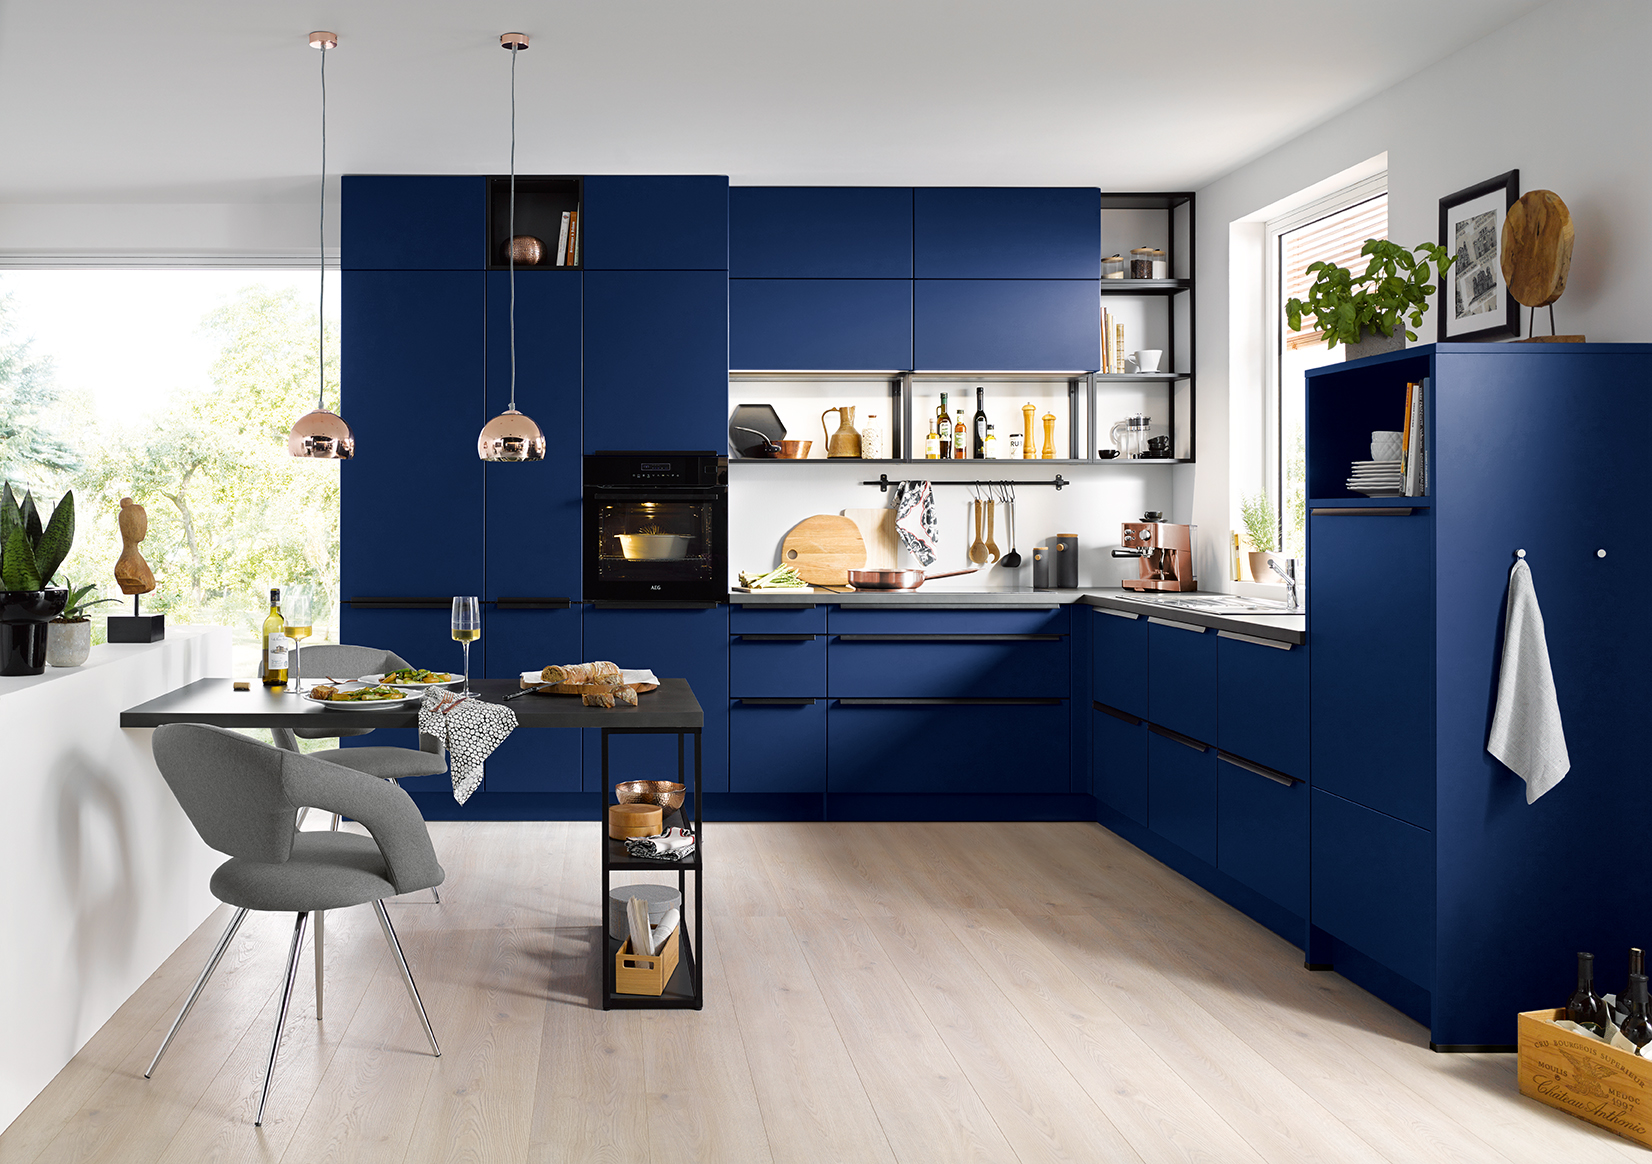 Uitwisseling stem Verplicht Een positieve twist met een blauwe keuken - moderne-keuken - keuken -  WONEN.nl